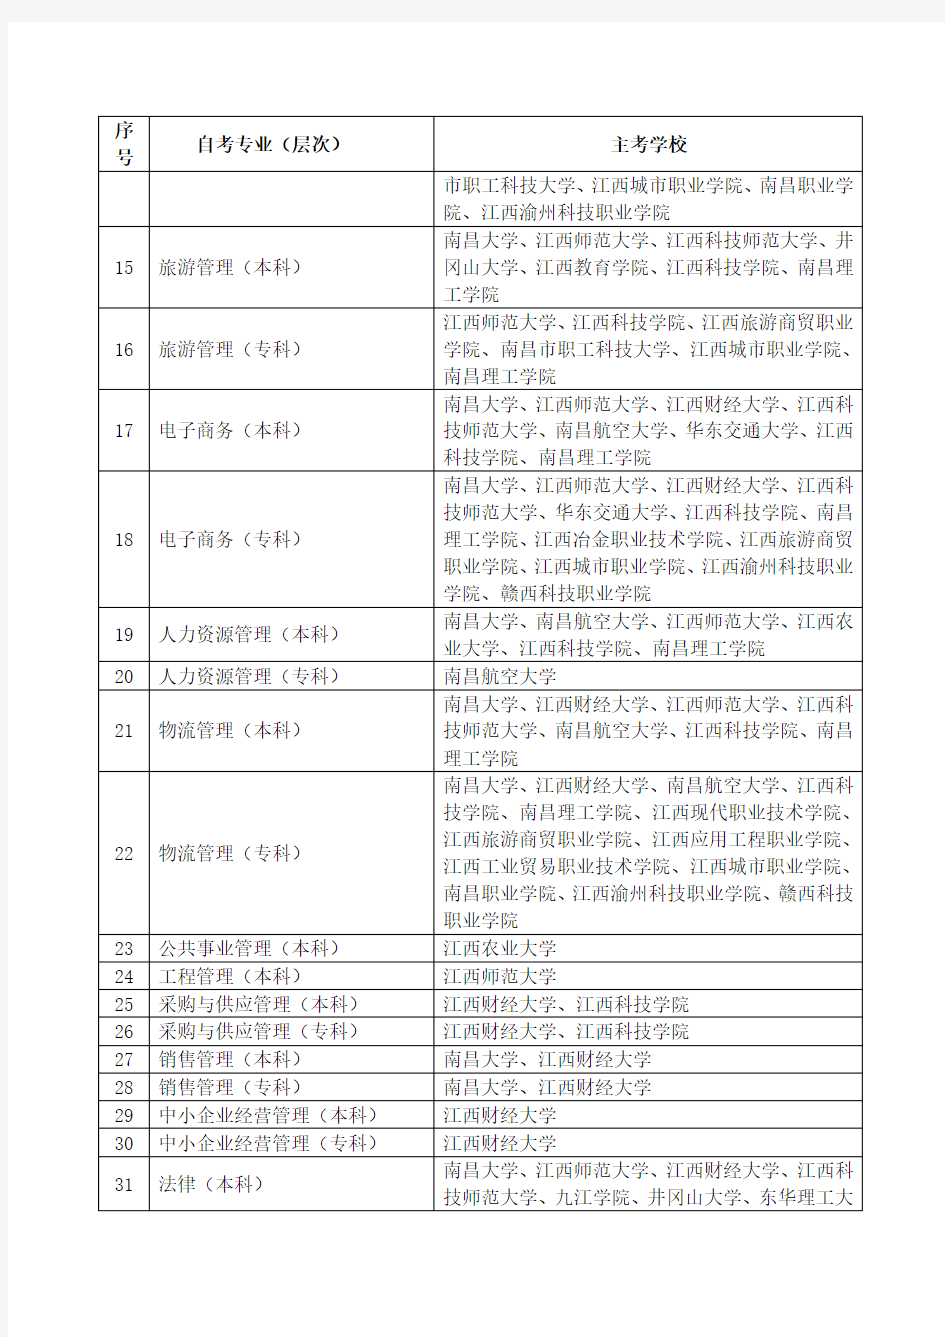 2014年江西省高等教育自学考试主考学校及主考专业